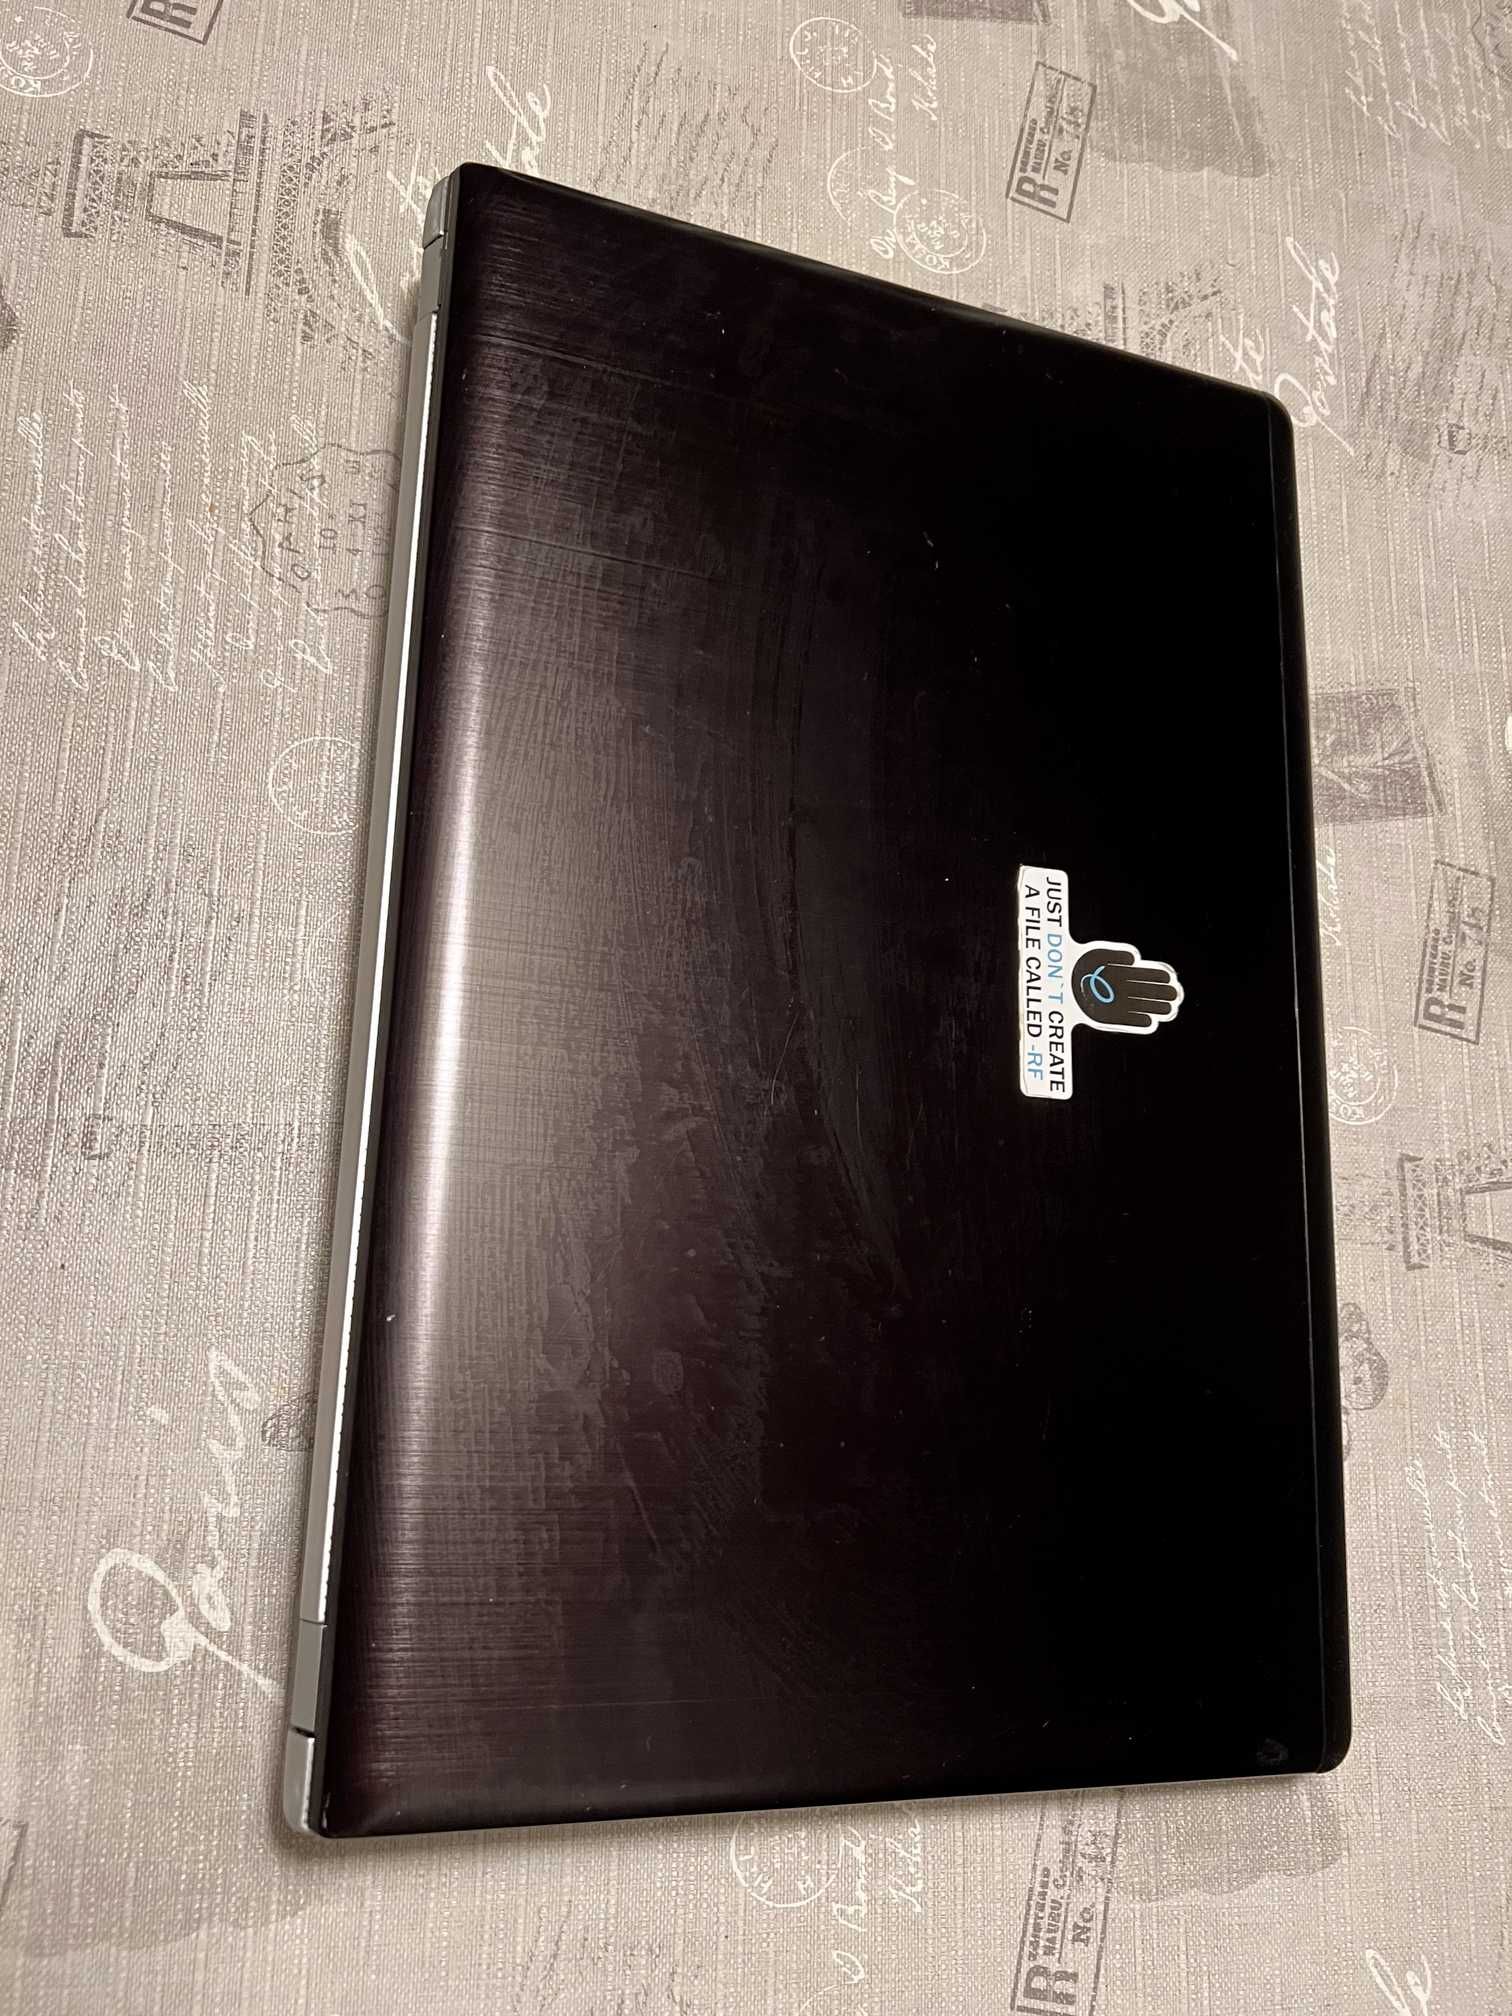 Asus N56J laptop